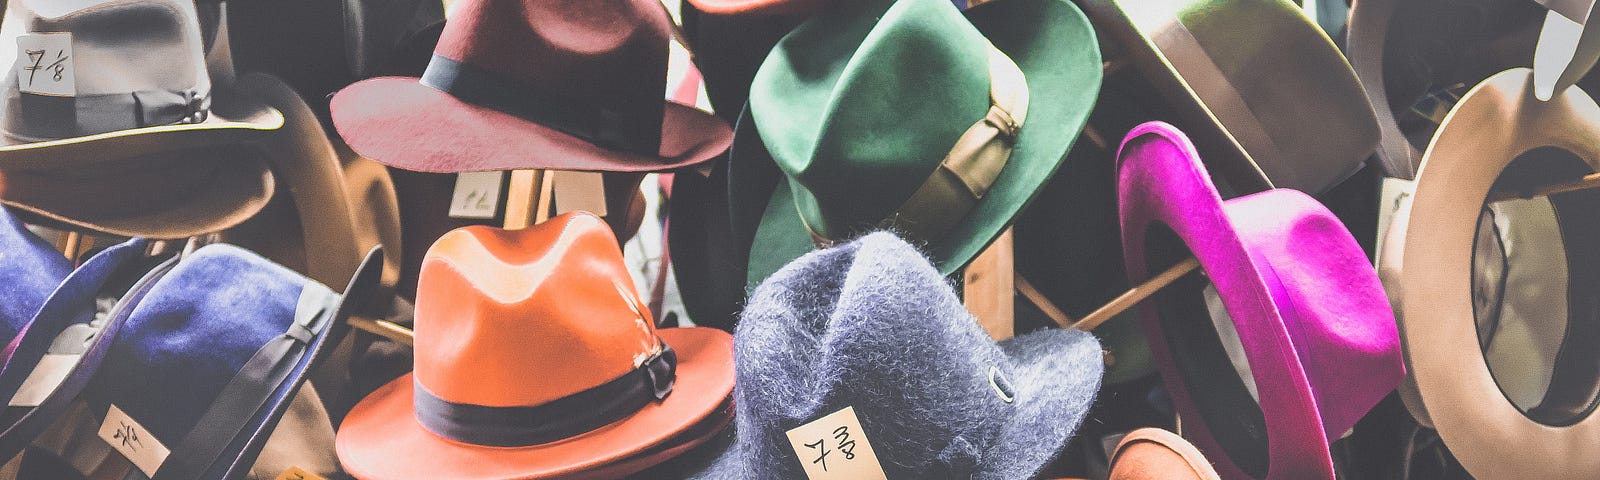 Variedades de chapéus dispostos em prateleiras.